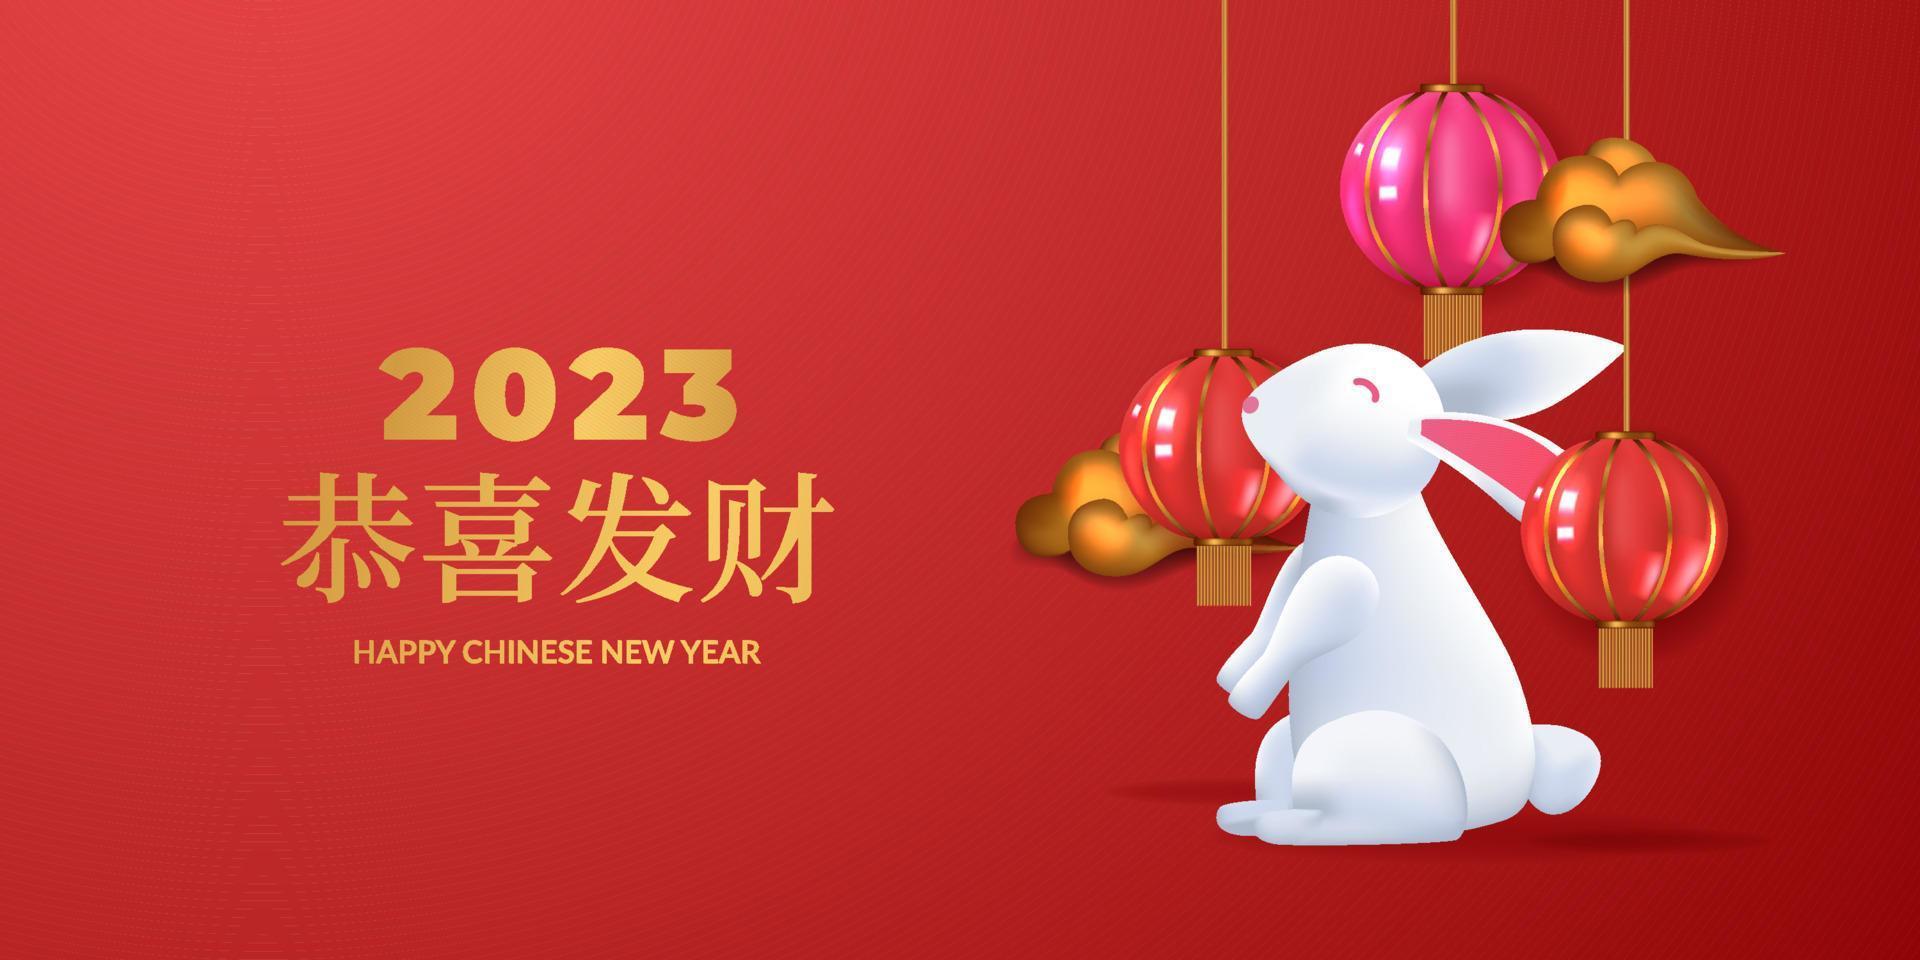 chinees nieuwjaar 2023 jaar van konijn met 3d konijntje en hangende lantaarn realistisch voor sjabloon voor wenskaartbanner vector